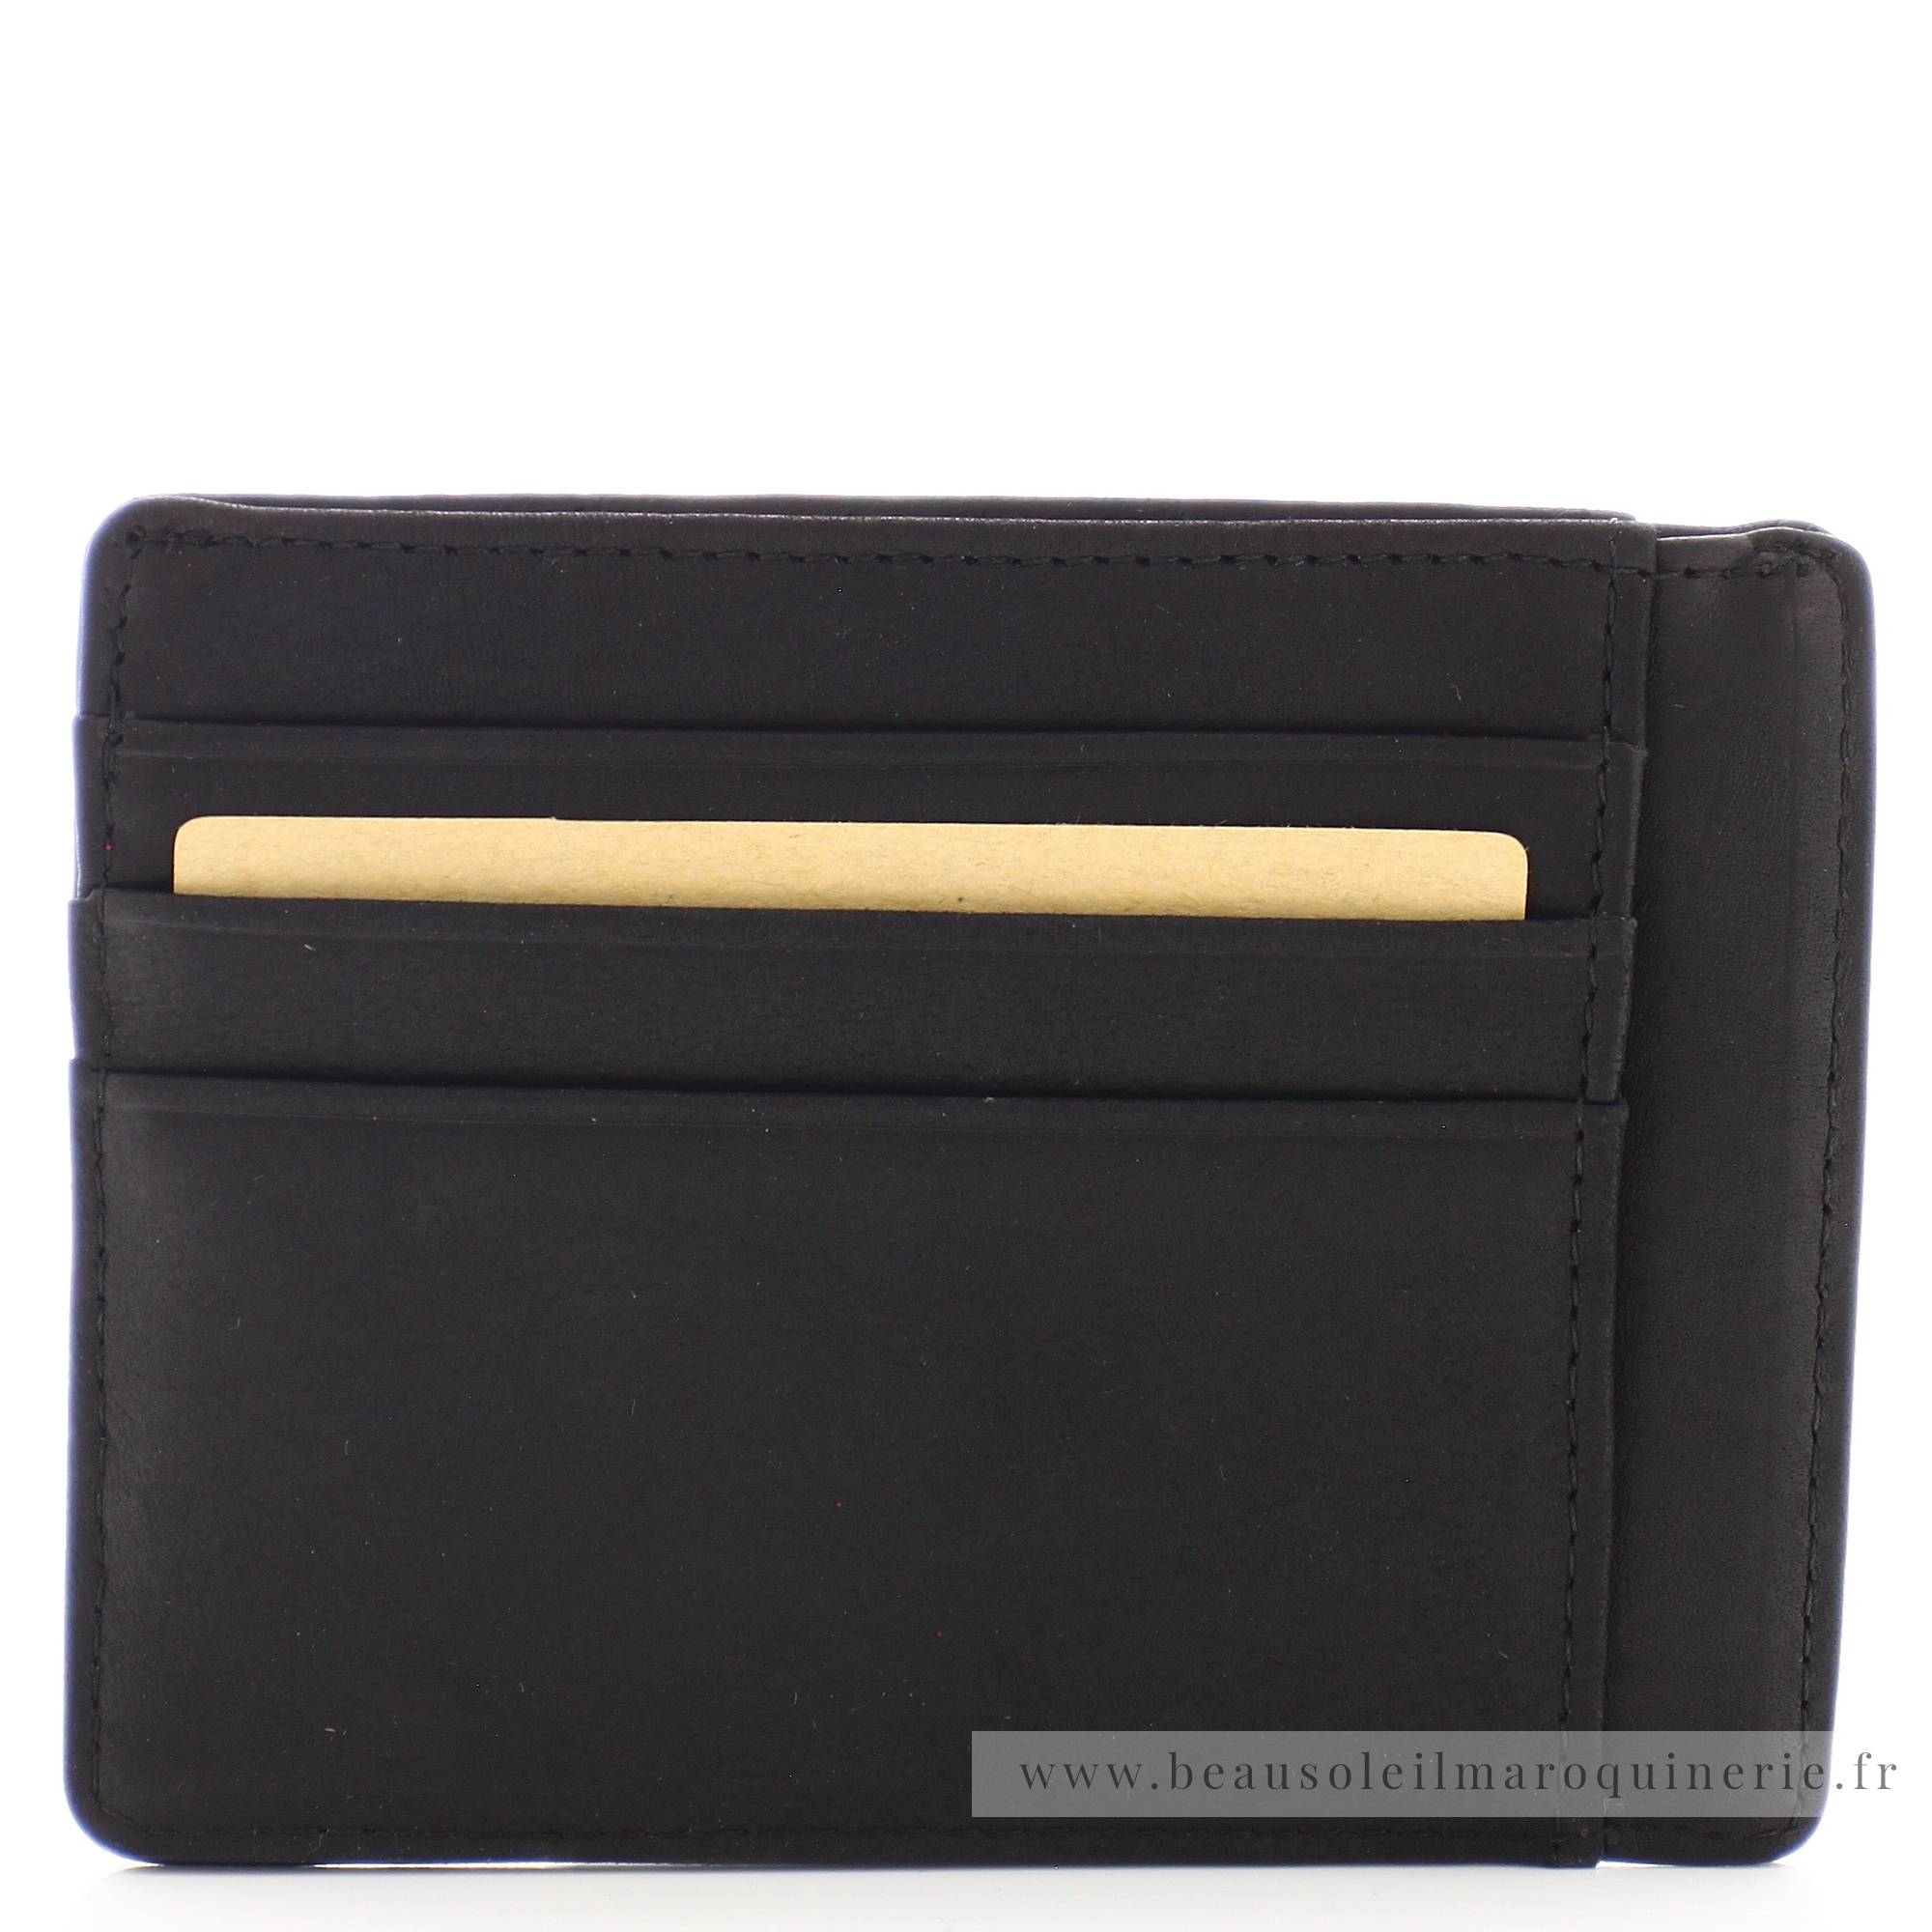 Porte cartes Arthur Aston Louis format mini cuir 94-147A couleur noir, vue de dos